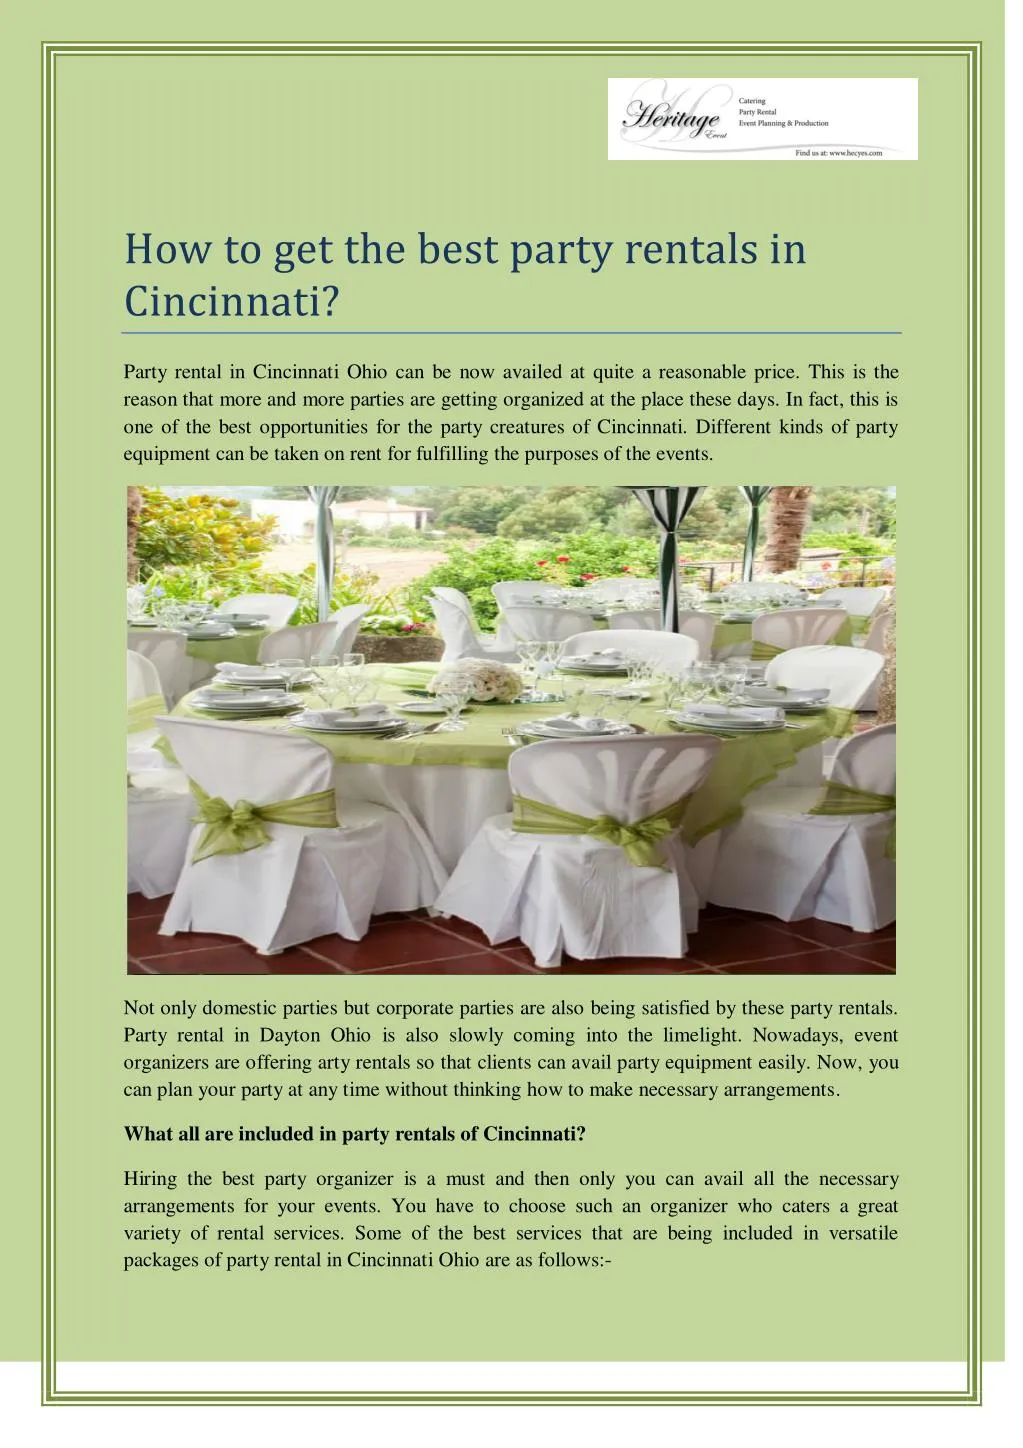 how to get the best party rentals in cincinnati